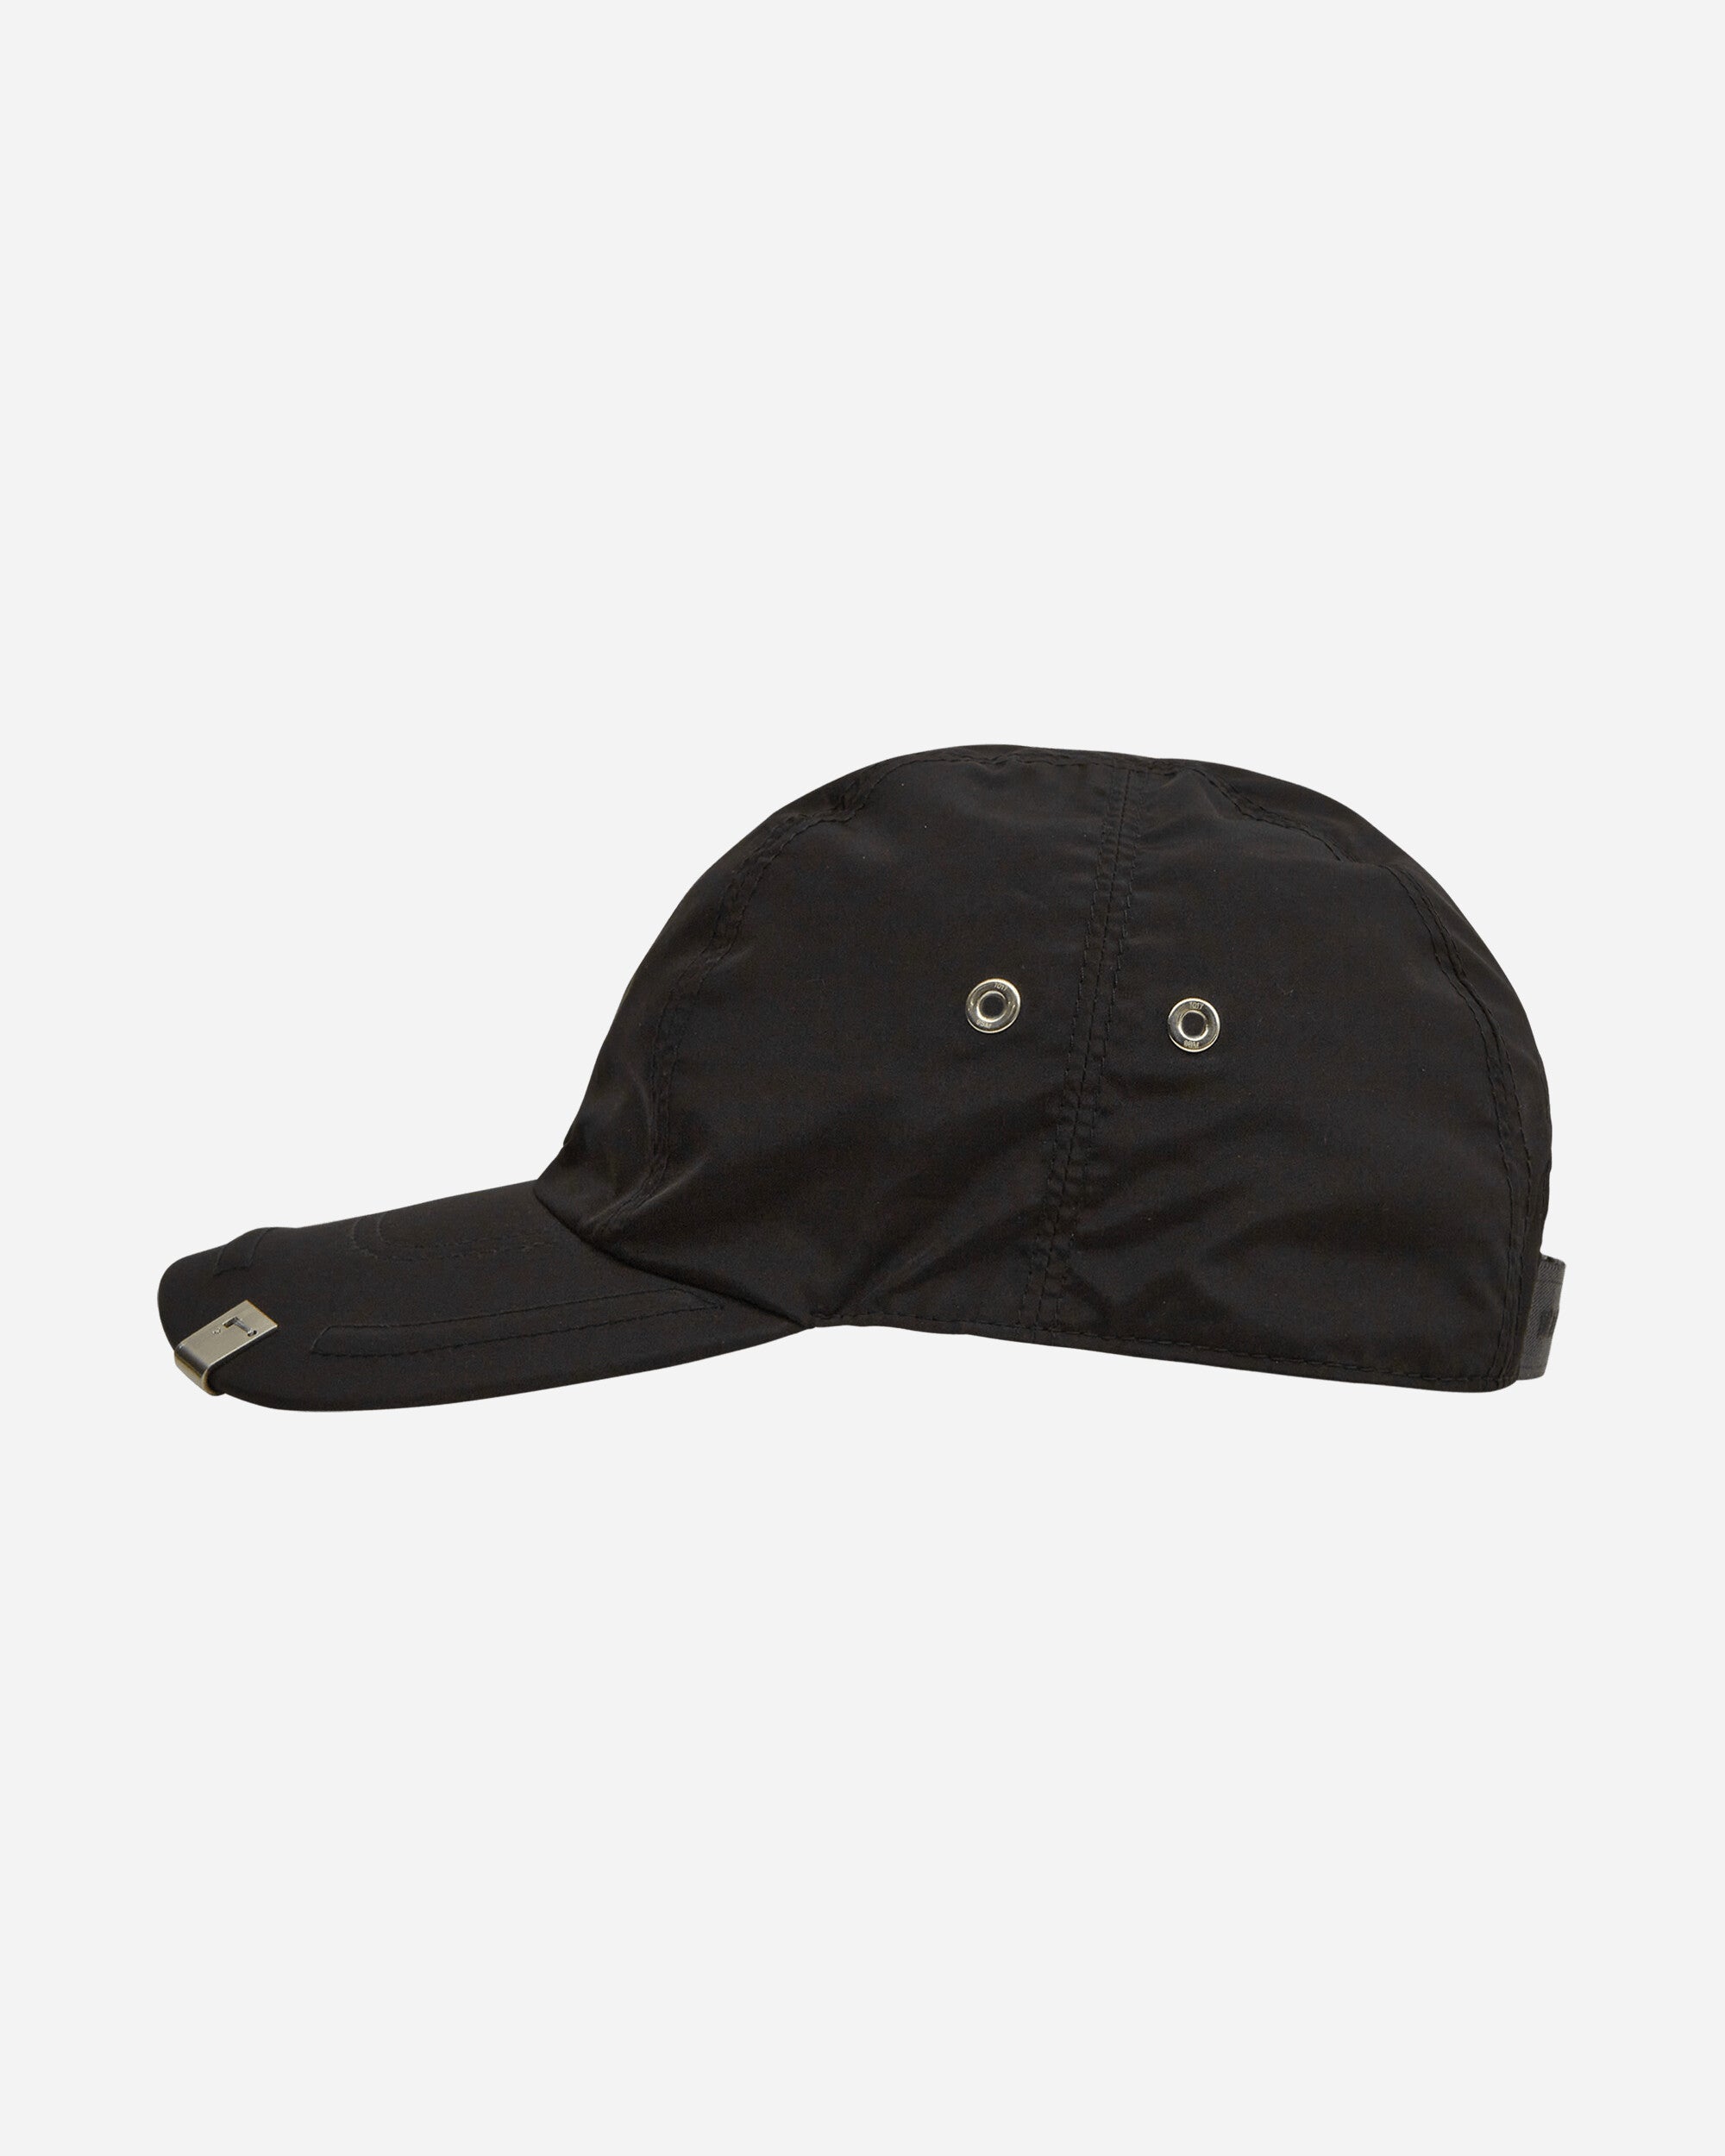 Lightweight Lightercap Cap Black